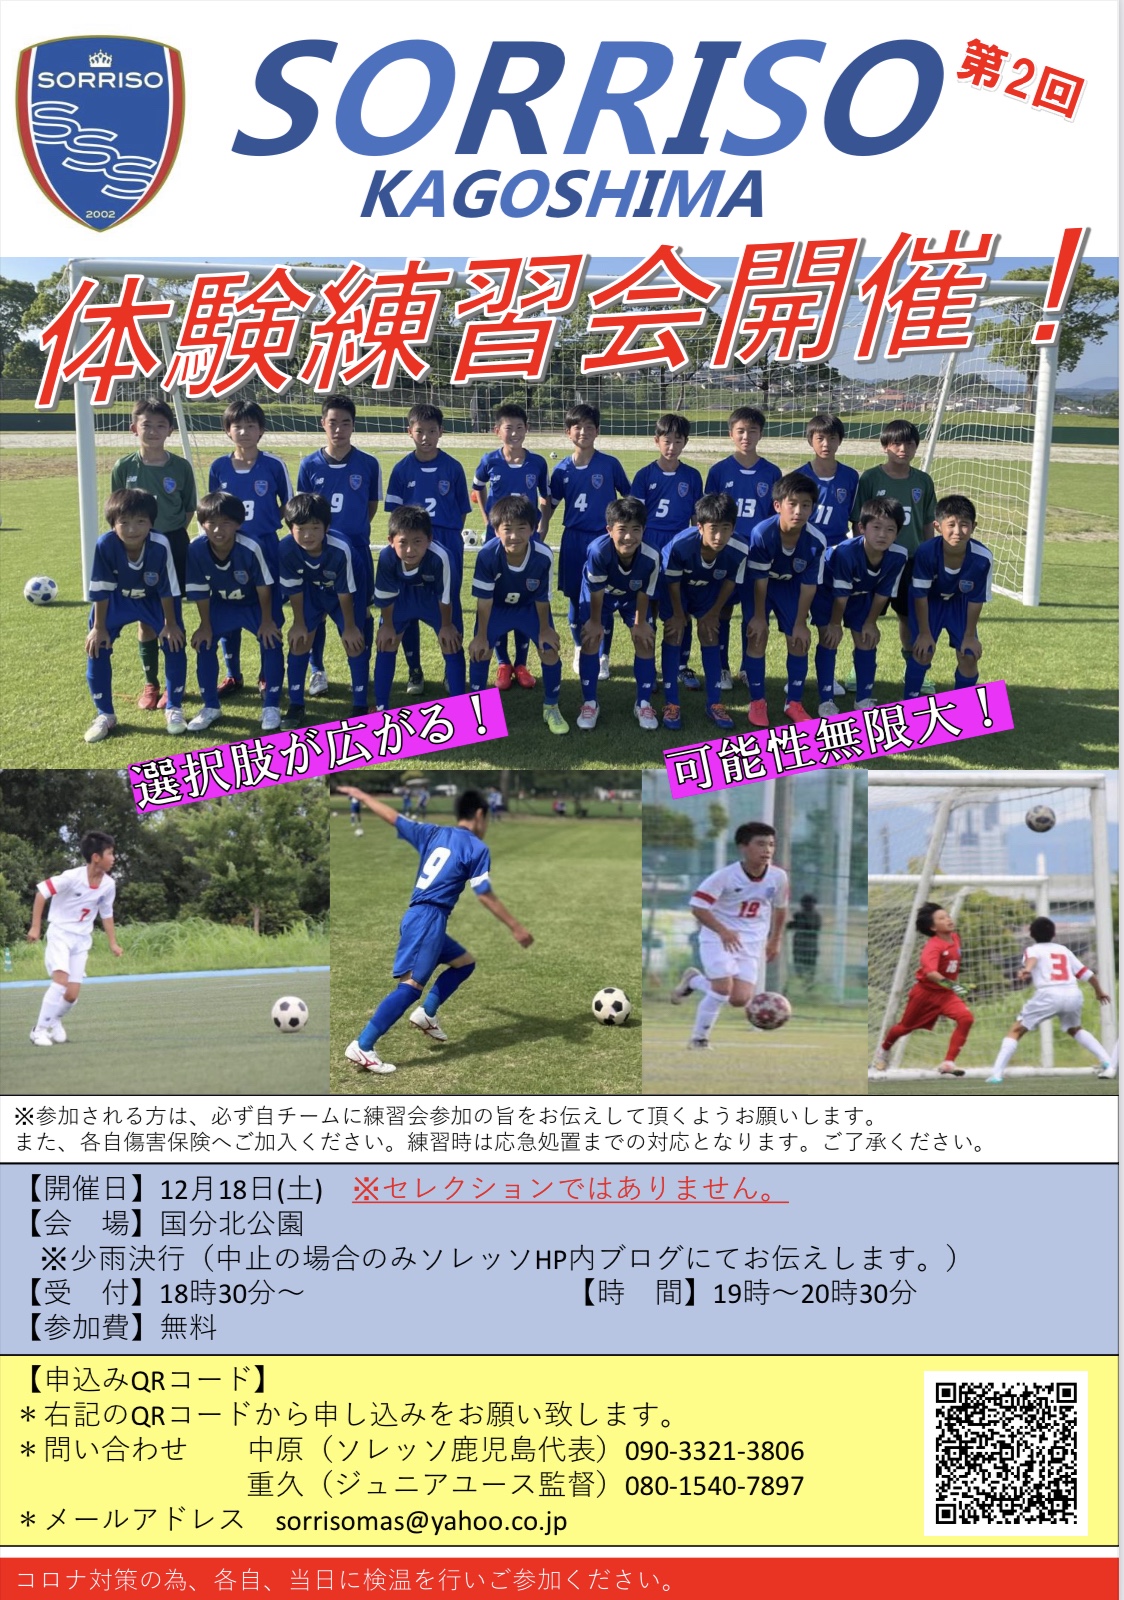 第2回ソレッソ鹿児島ジュニアユース体験練習会 ソレッソ熊本 熊本のサッカークラブ